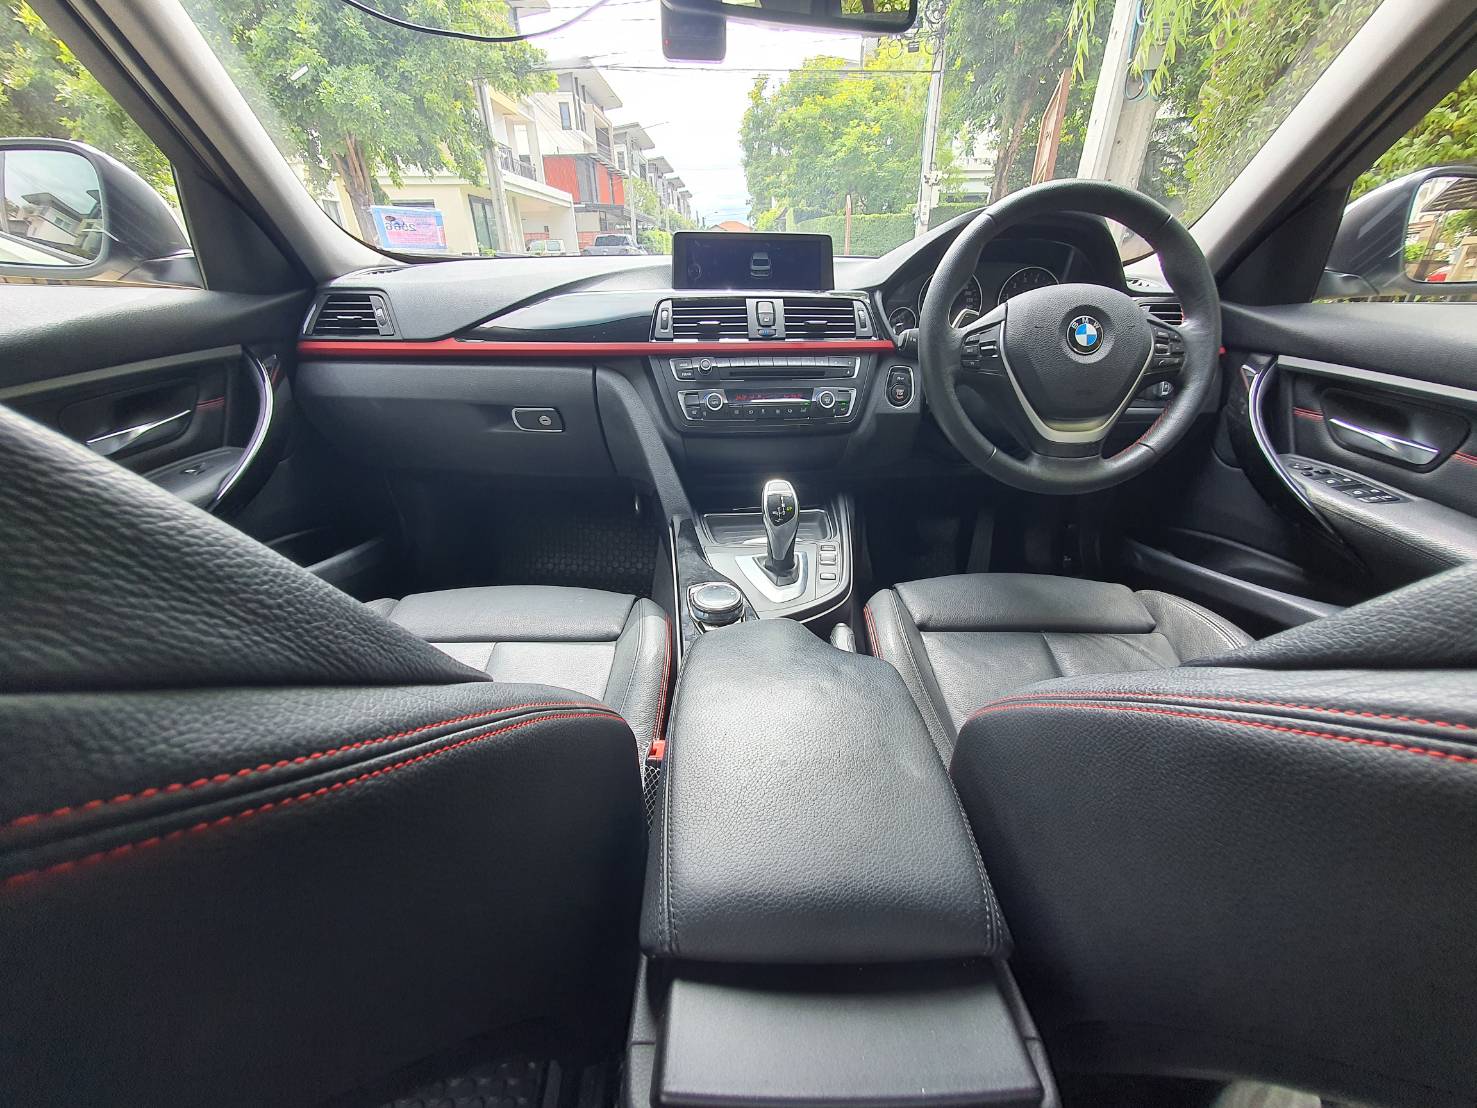 BMW 320i Sport F30 ปี 2014 จด ปี2015 สีขาว มือ1 เช็คศูนย์ตลอด